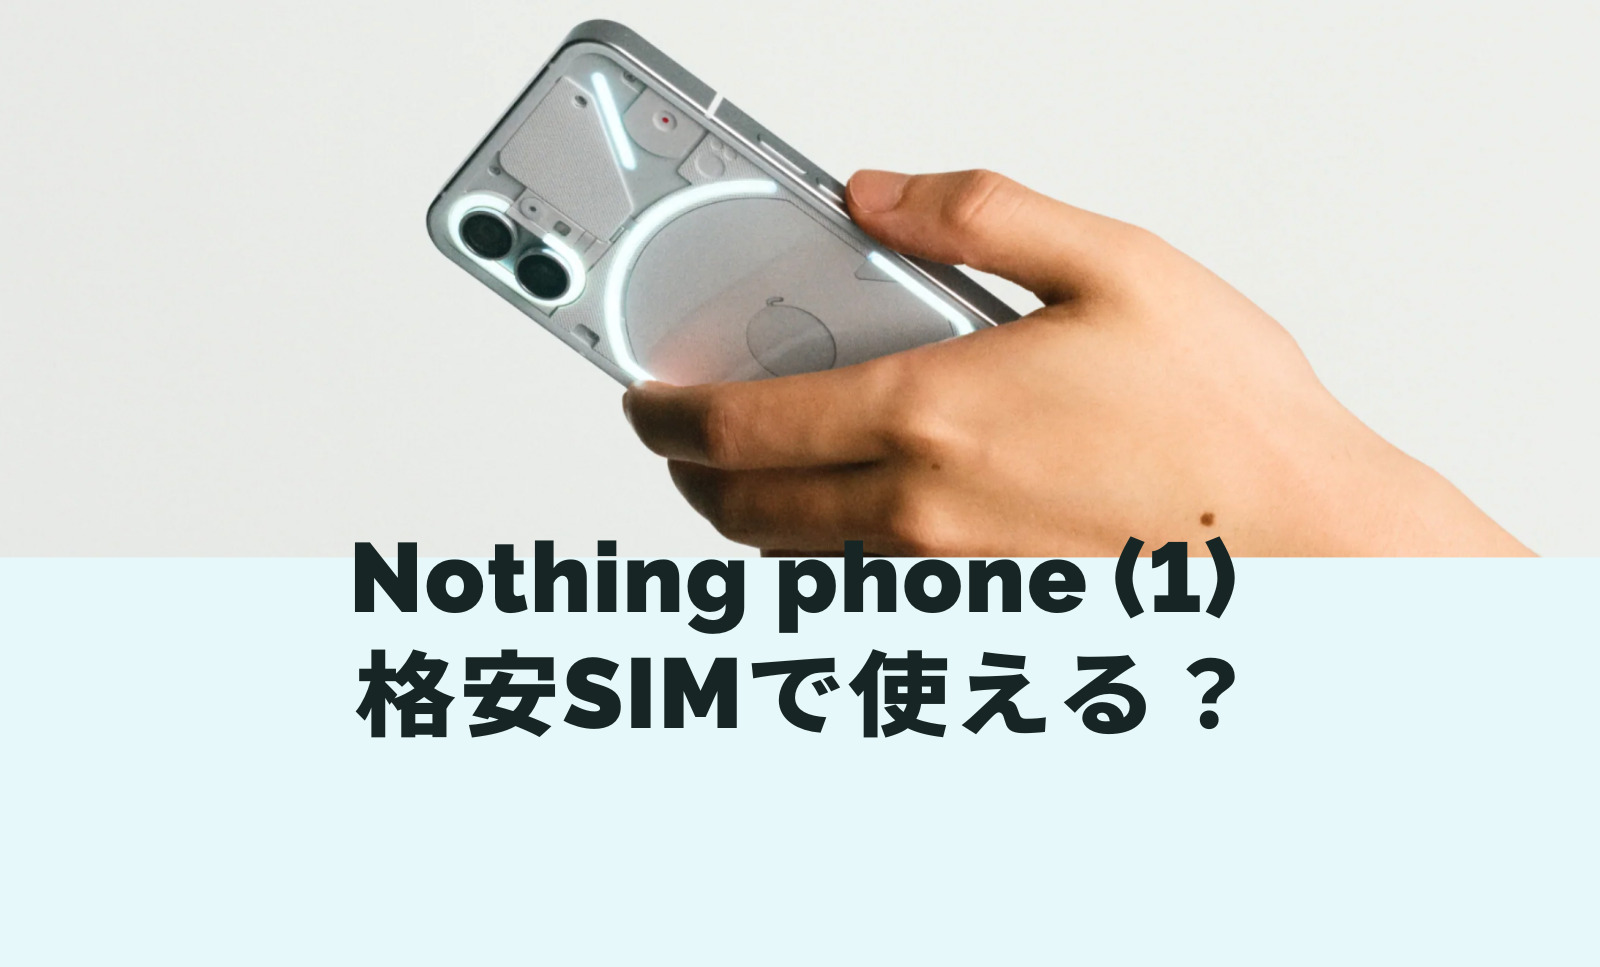 Nothing Phone (1)は格安SIM&格安スマホでも使える？セット販売は？のサムネイル画像